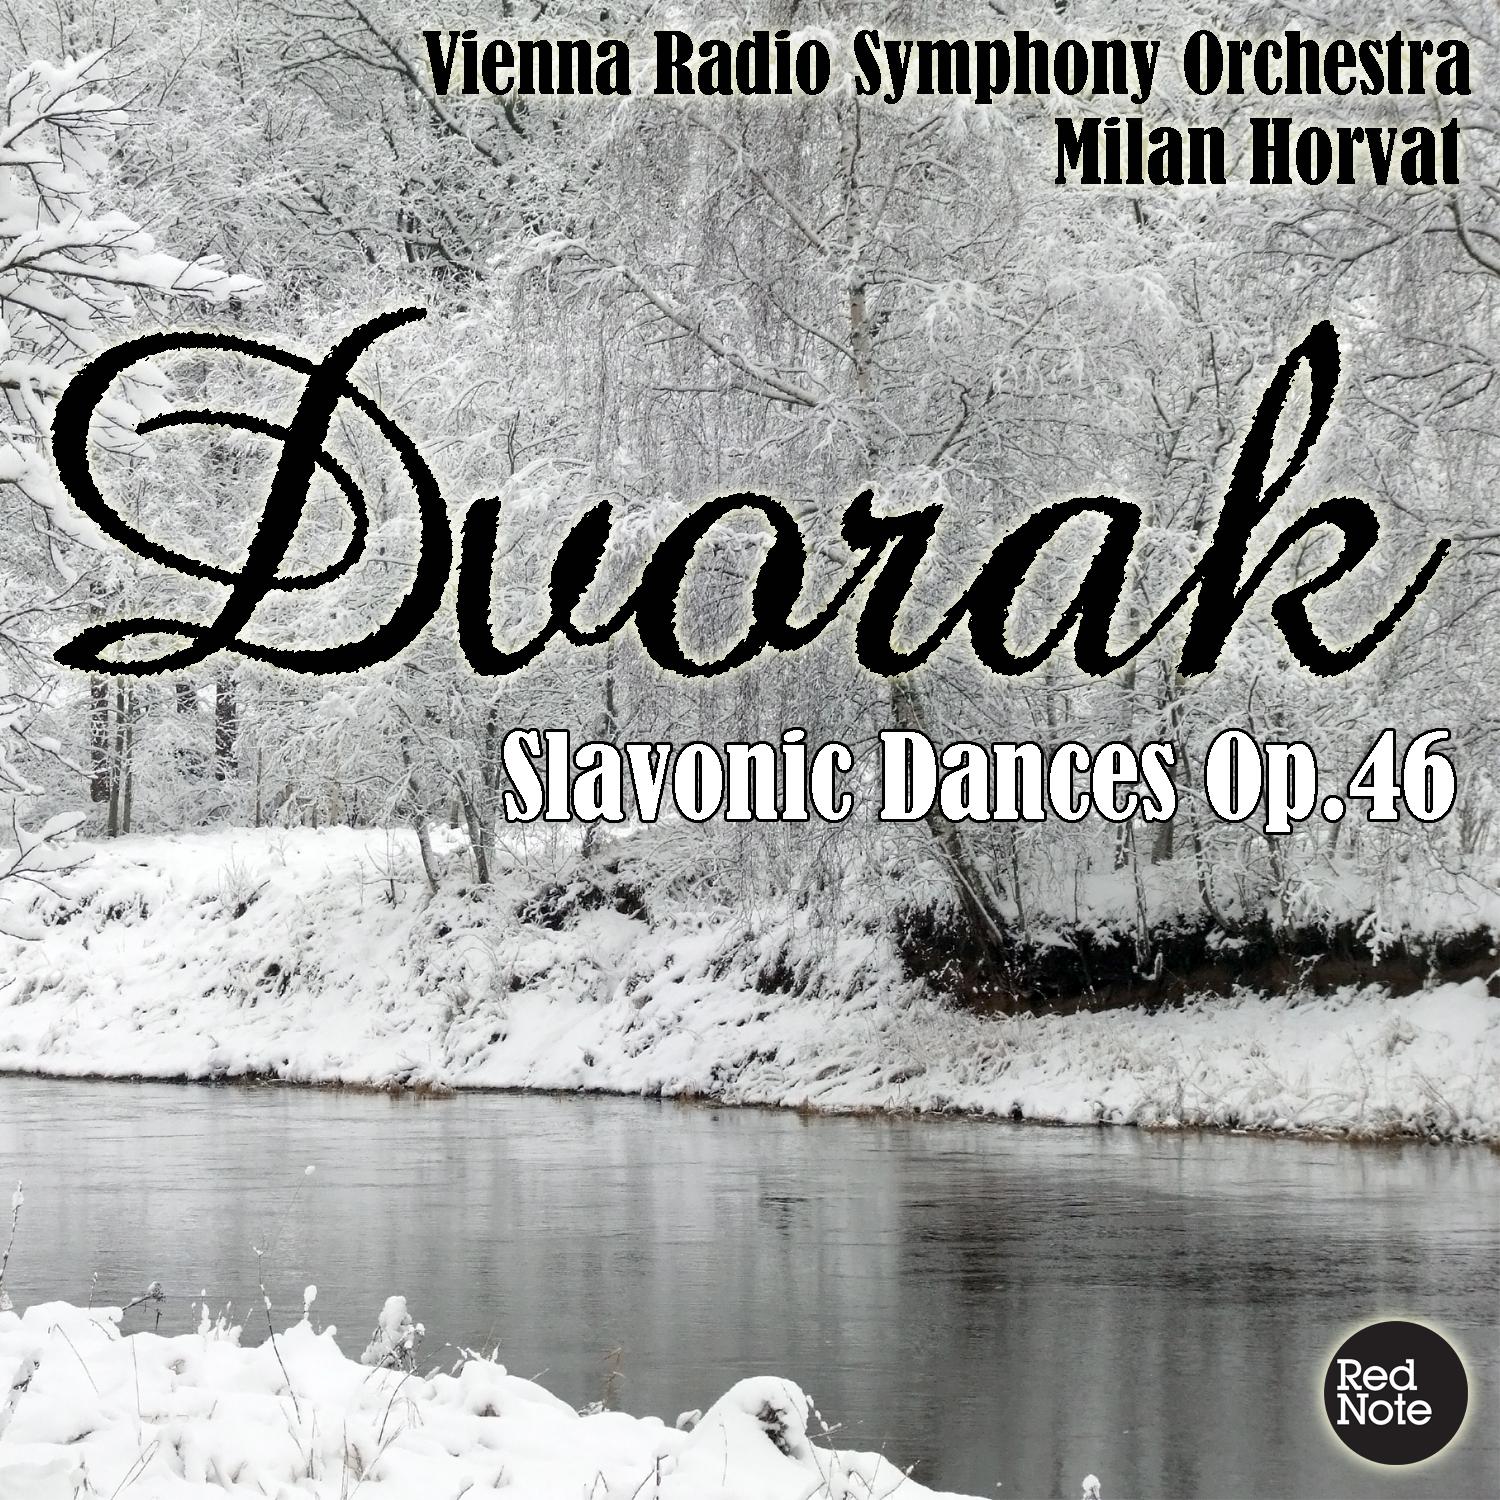 Slavonic Dances in G Minor, Op.46: No.8 - Presto